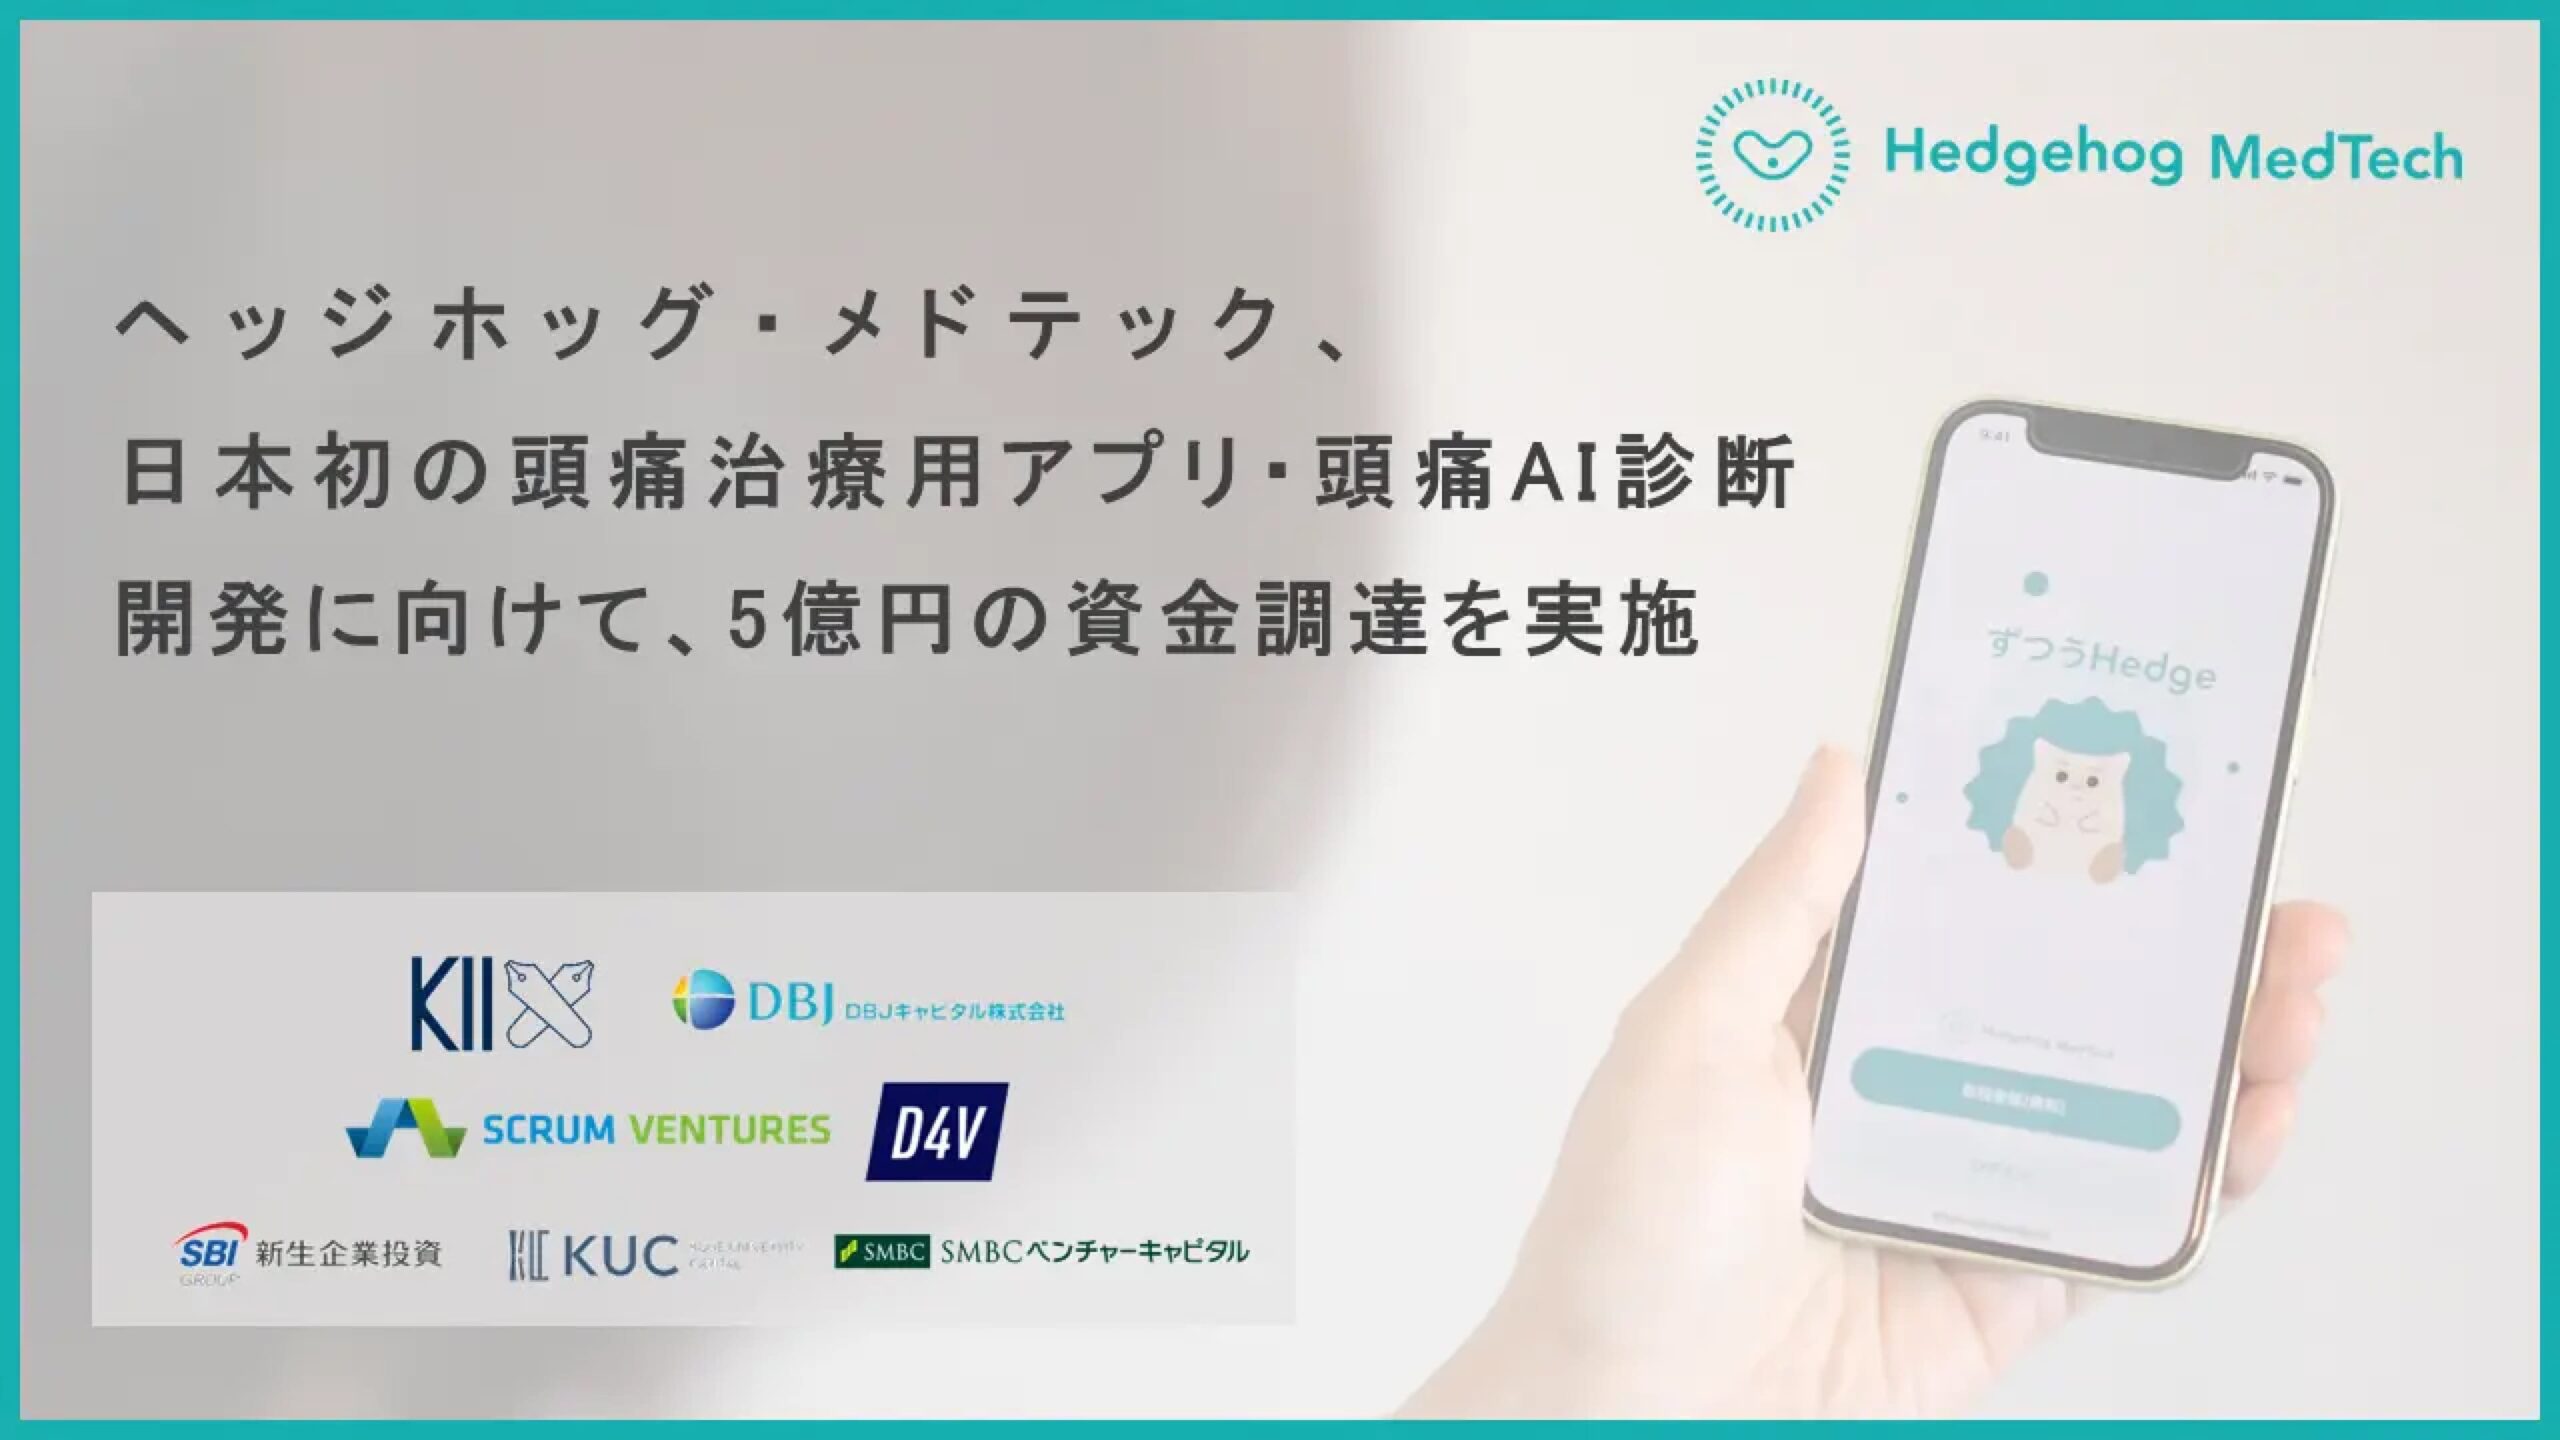 日本初の片頭痛治療用アプリ・頭痛AI診断の開発に取り組む株式会社ヘッジホッグ・メドテックがシリーズAにて5億円の資金調達